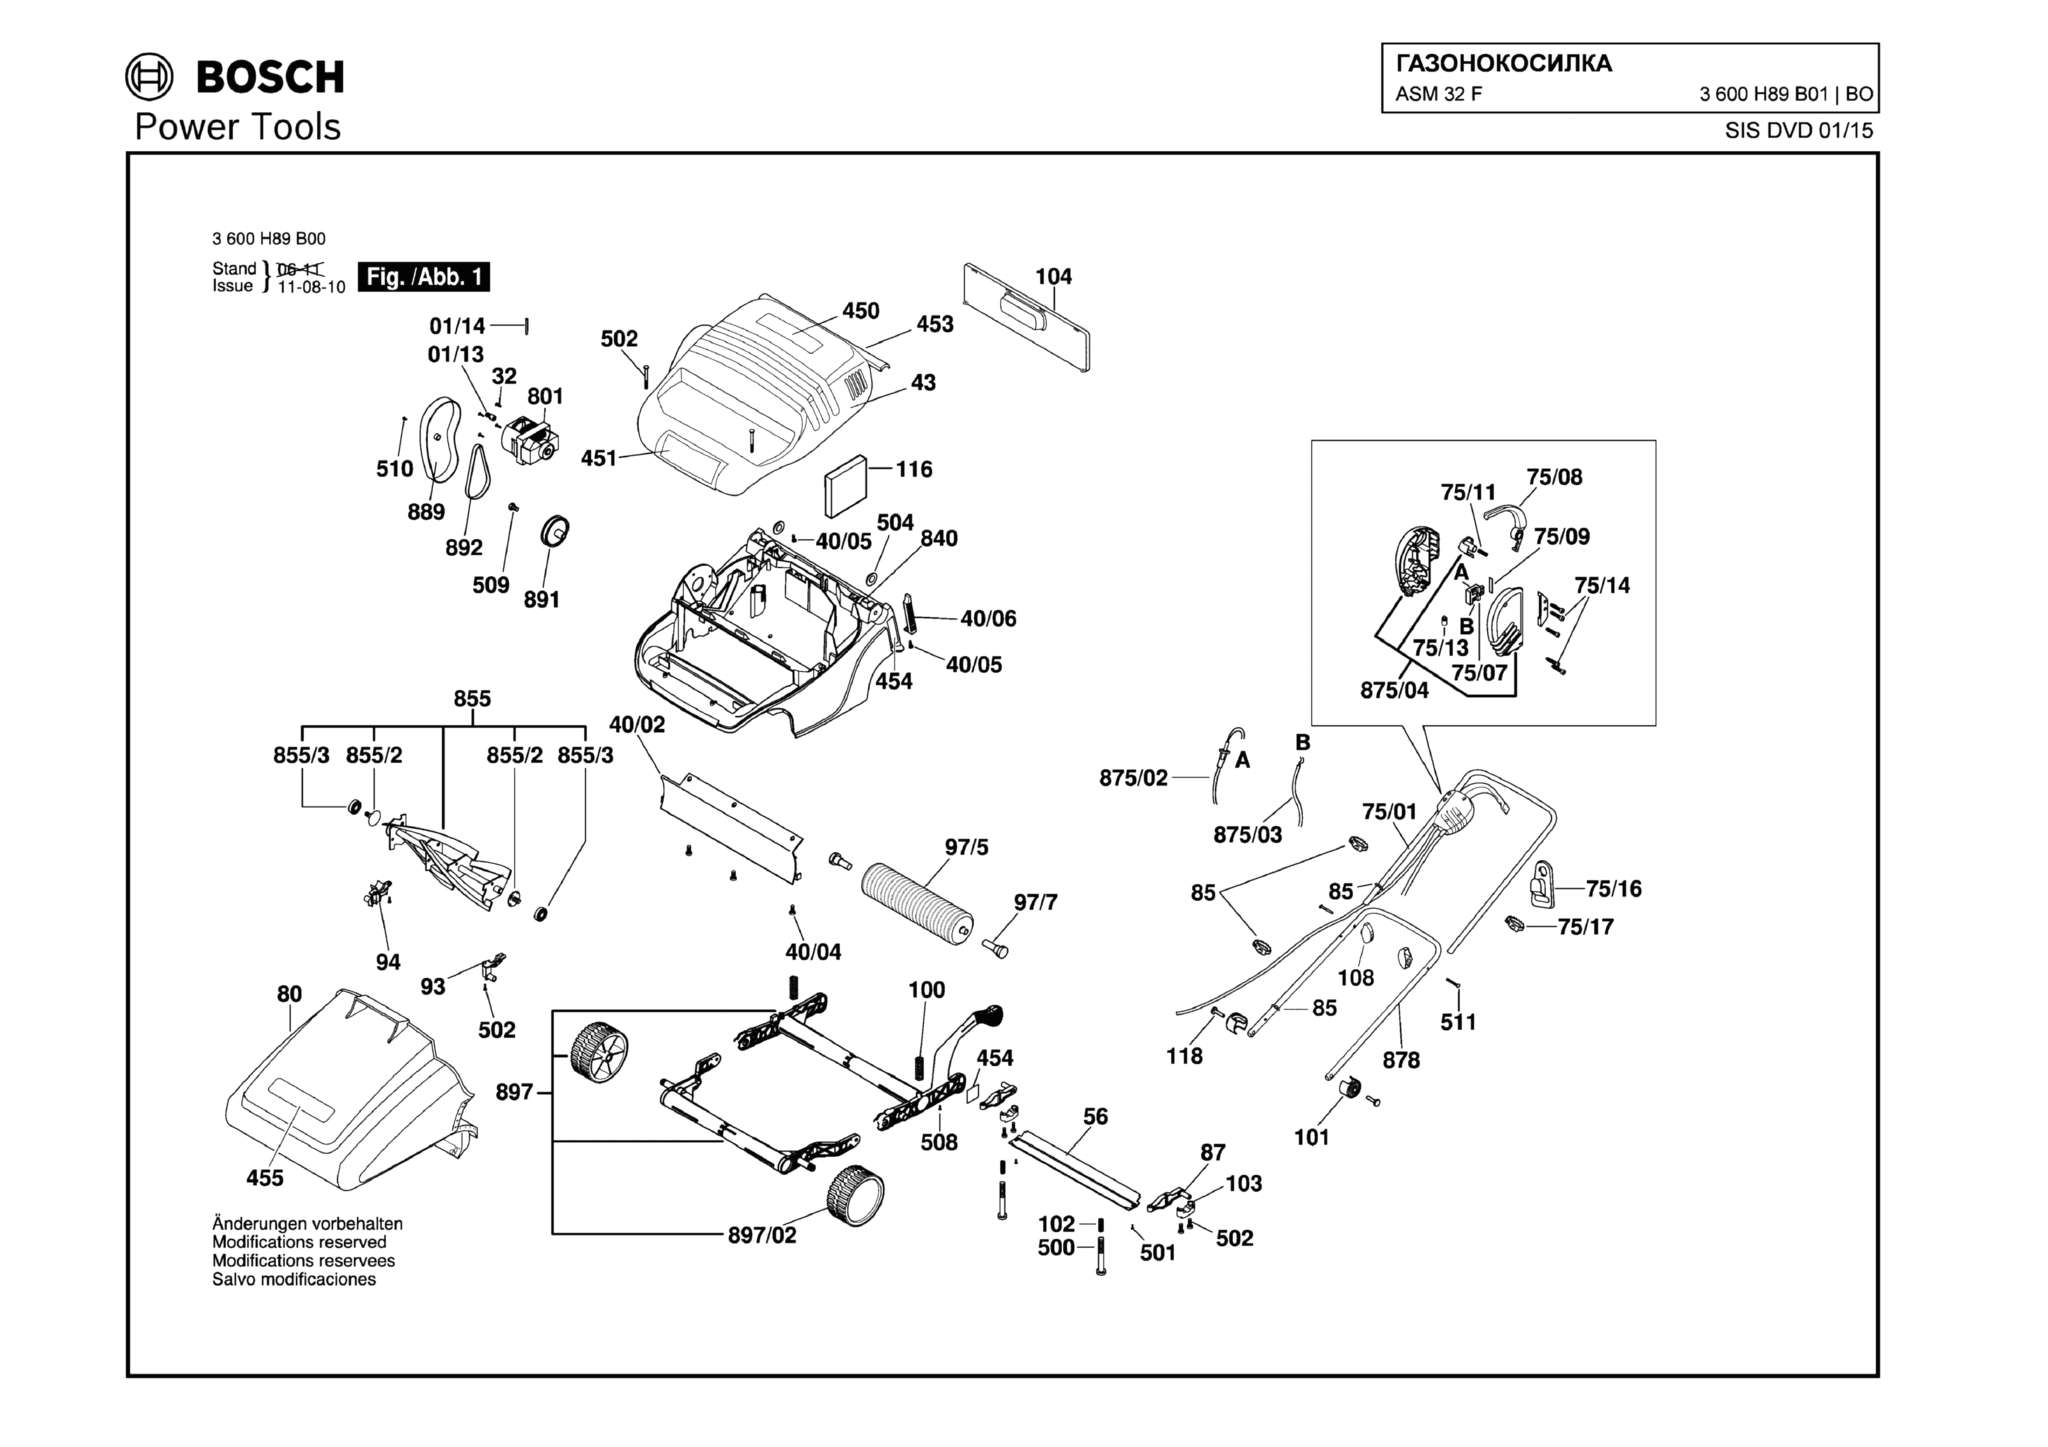 Запчасти, схема и деталировка Bosch ASM 32 F (ТИП 3600H89B01)